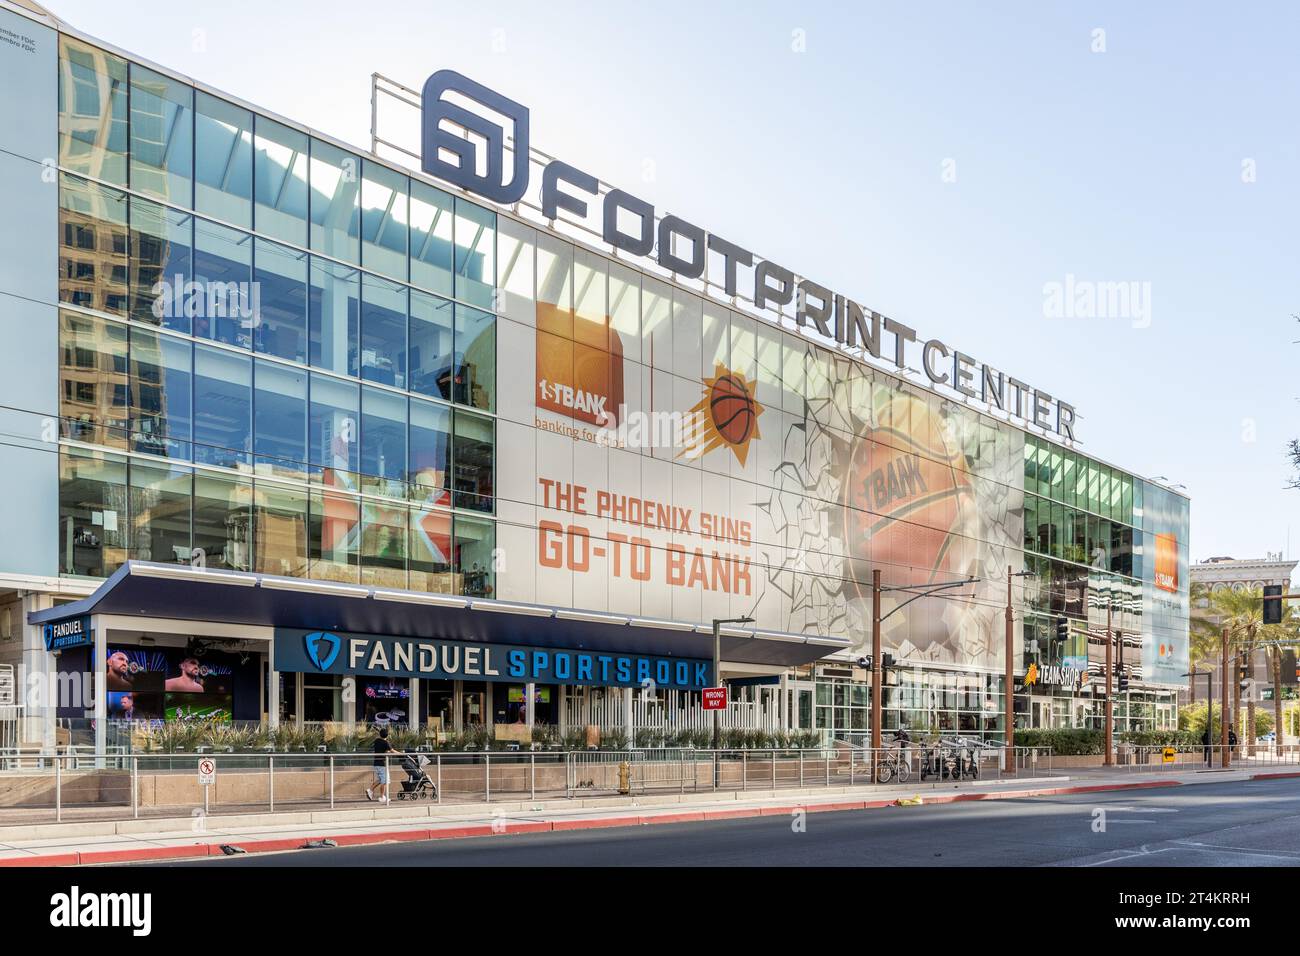 Das Footprint Center befindet sich im Herzen der Innenstadt von Phoenix und beherbergt die Phoenix Suns der NBA. Stockfoto